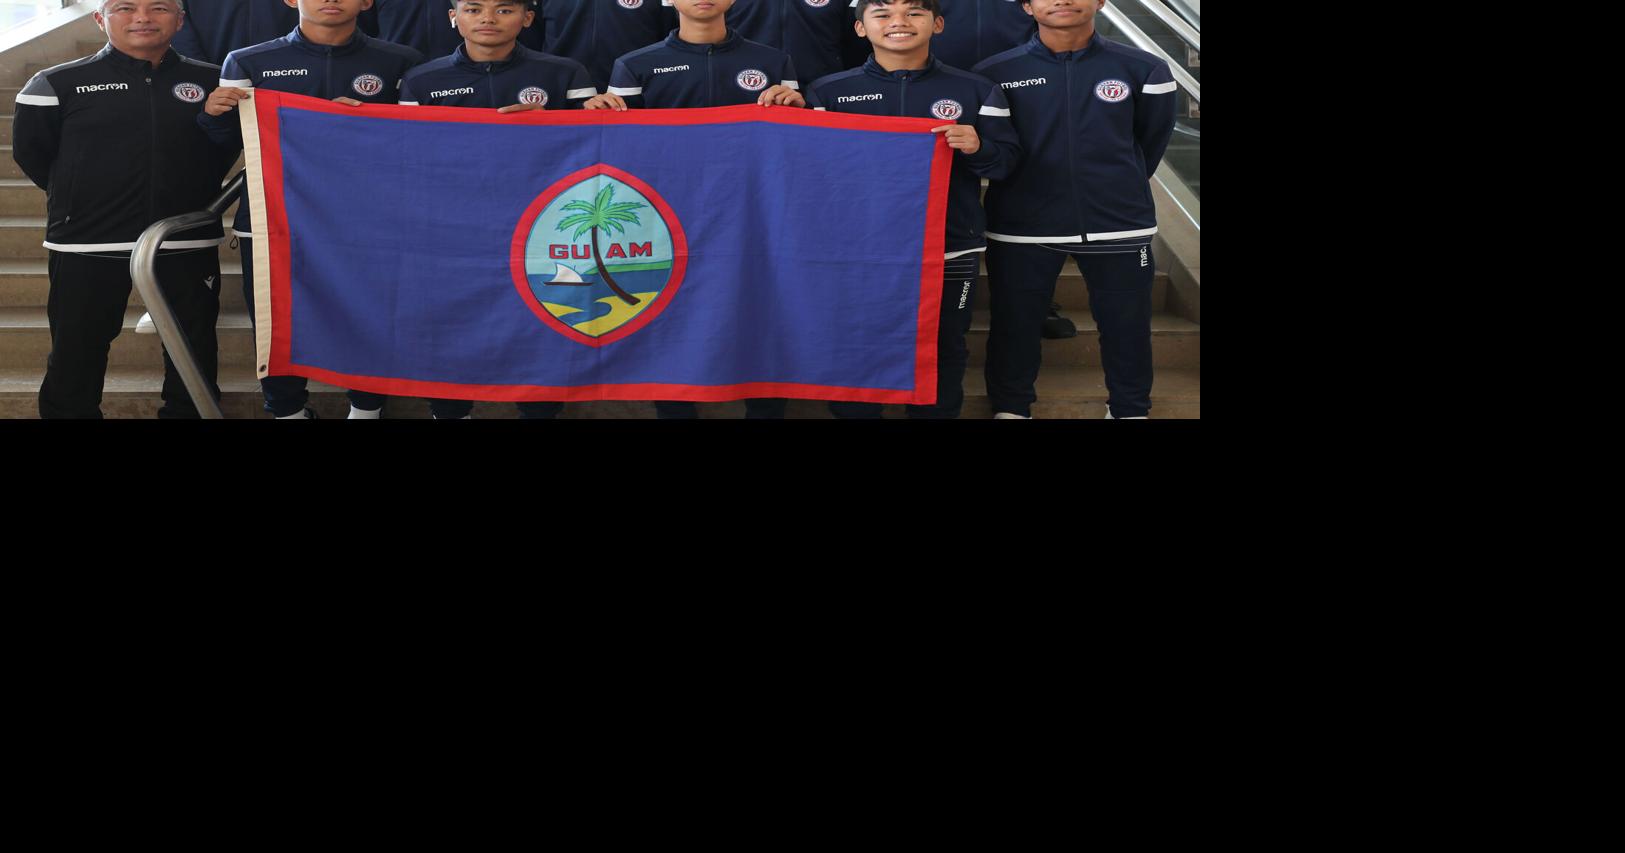 Timnas Guam U17 Berlaga di Indonesia |  permainan gua